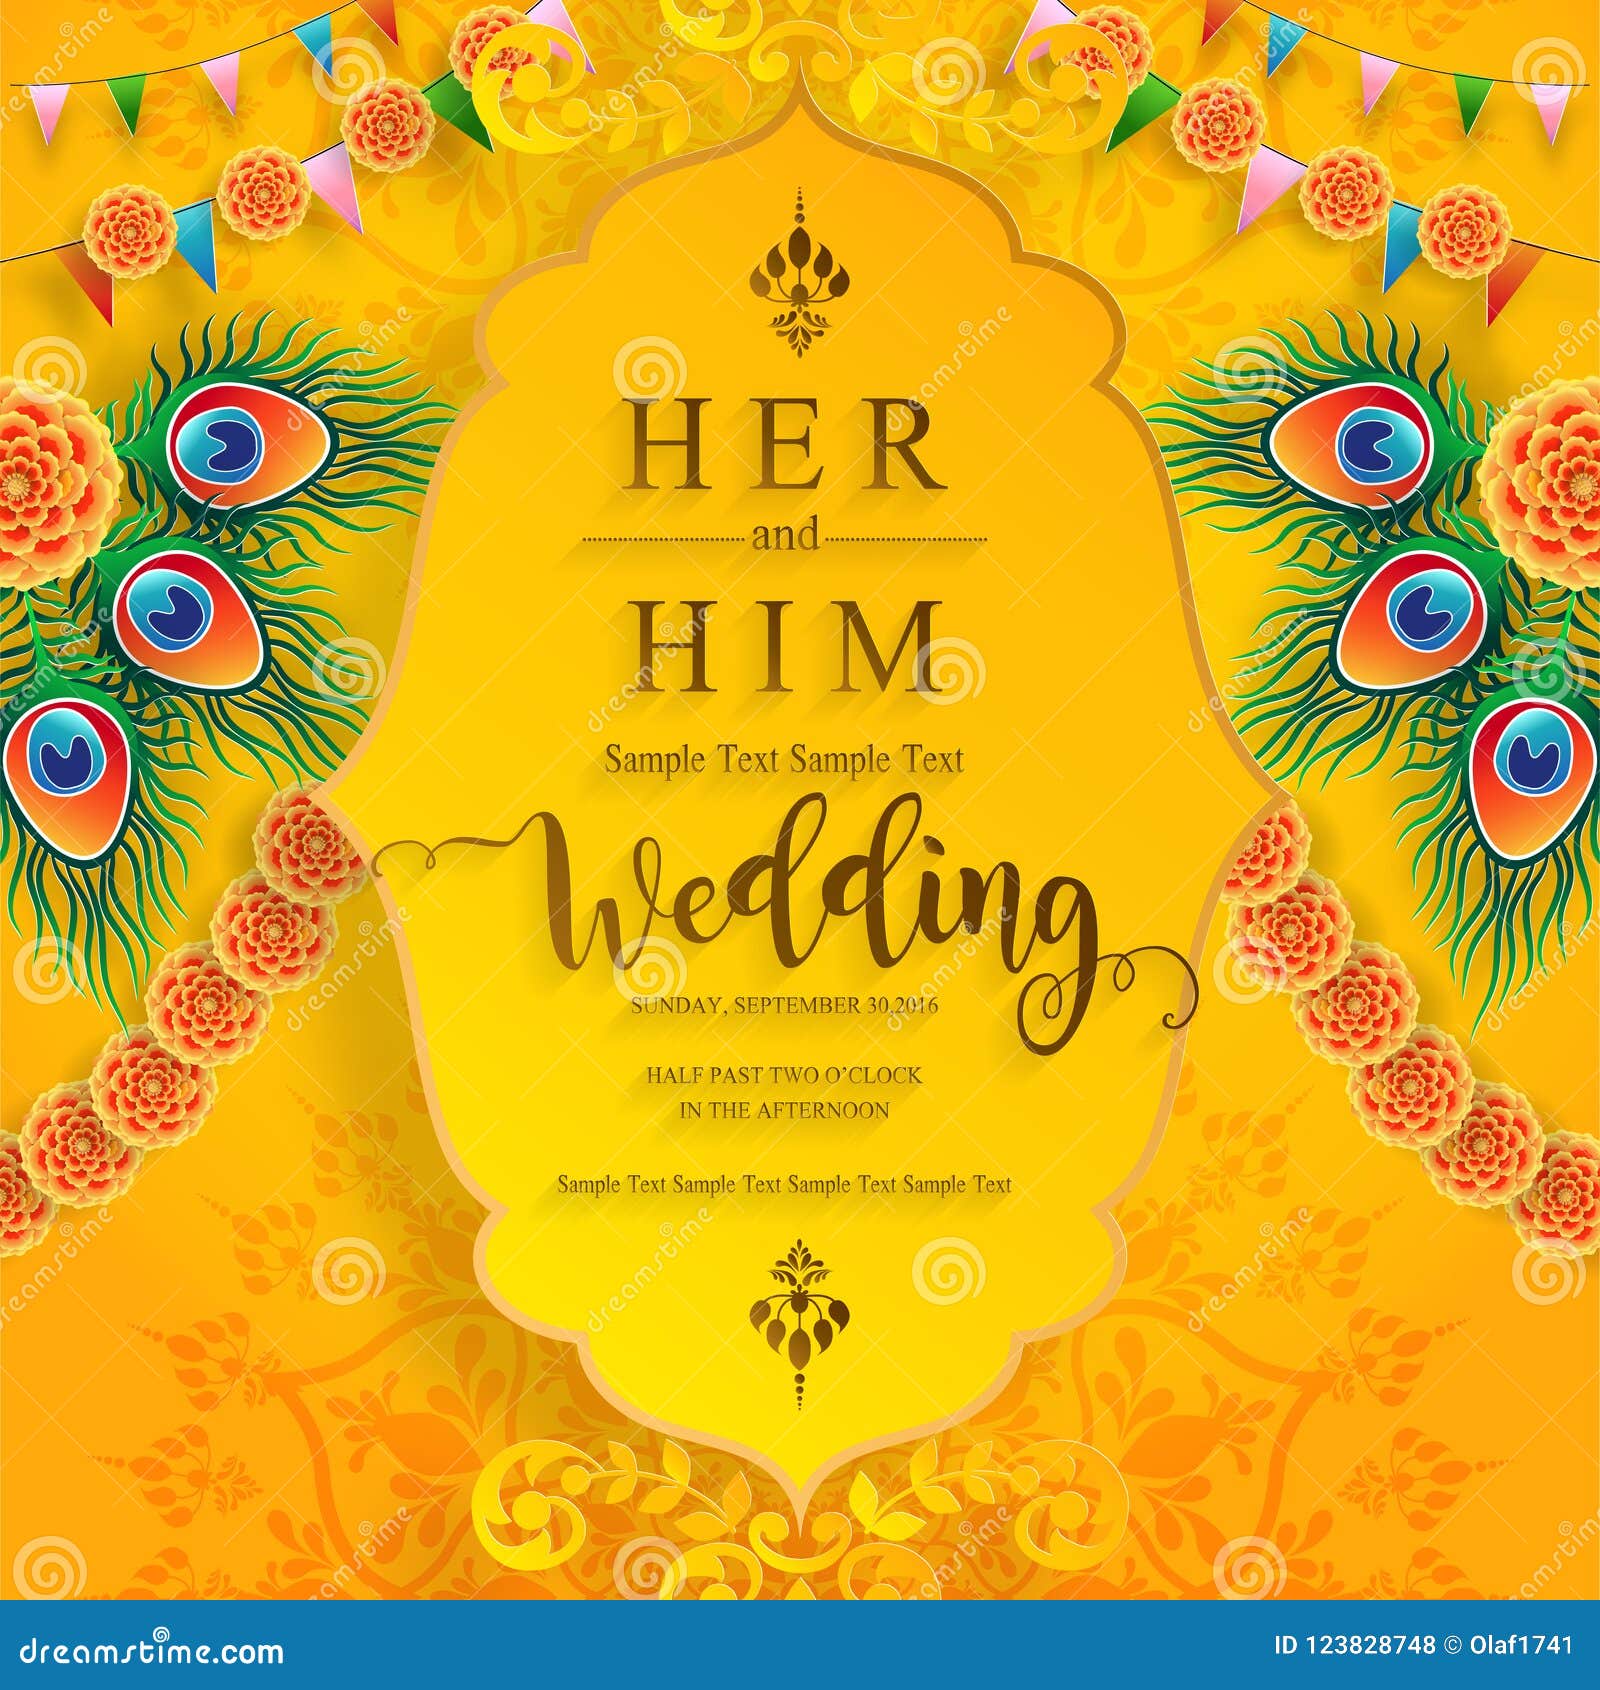 Bức ảnh liên quan sẽ giúp bạn tìm kiếm những thiếp cưới đến từ Ấn Độ đầy màu sắc. Những thiếp này được thiết kế với sự tinh tế và độc đáo, giúp cho không gian của lễ cưới trở nên đặc biệt và lung linh hơn.